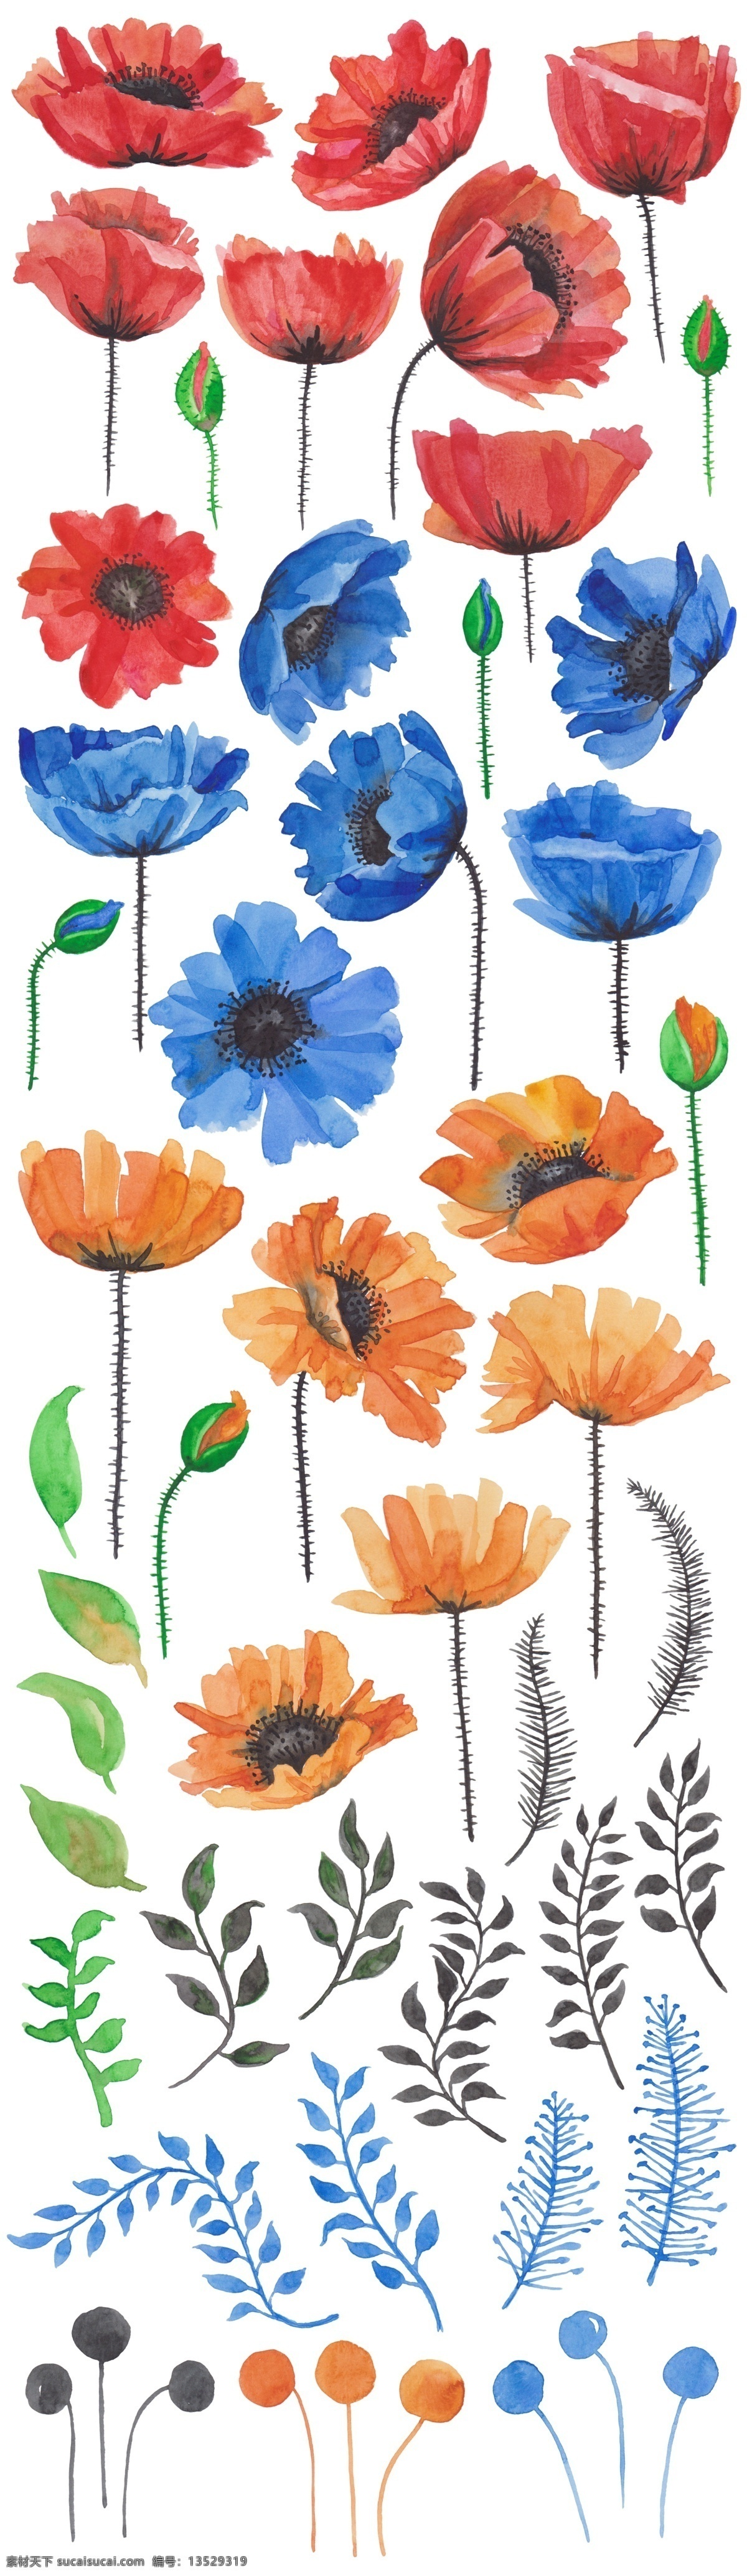 多彩 盛开 花朵 源文件 海报设计装饰 花卉 设计素材 淘宝素材 形态各异 装饰